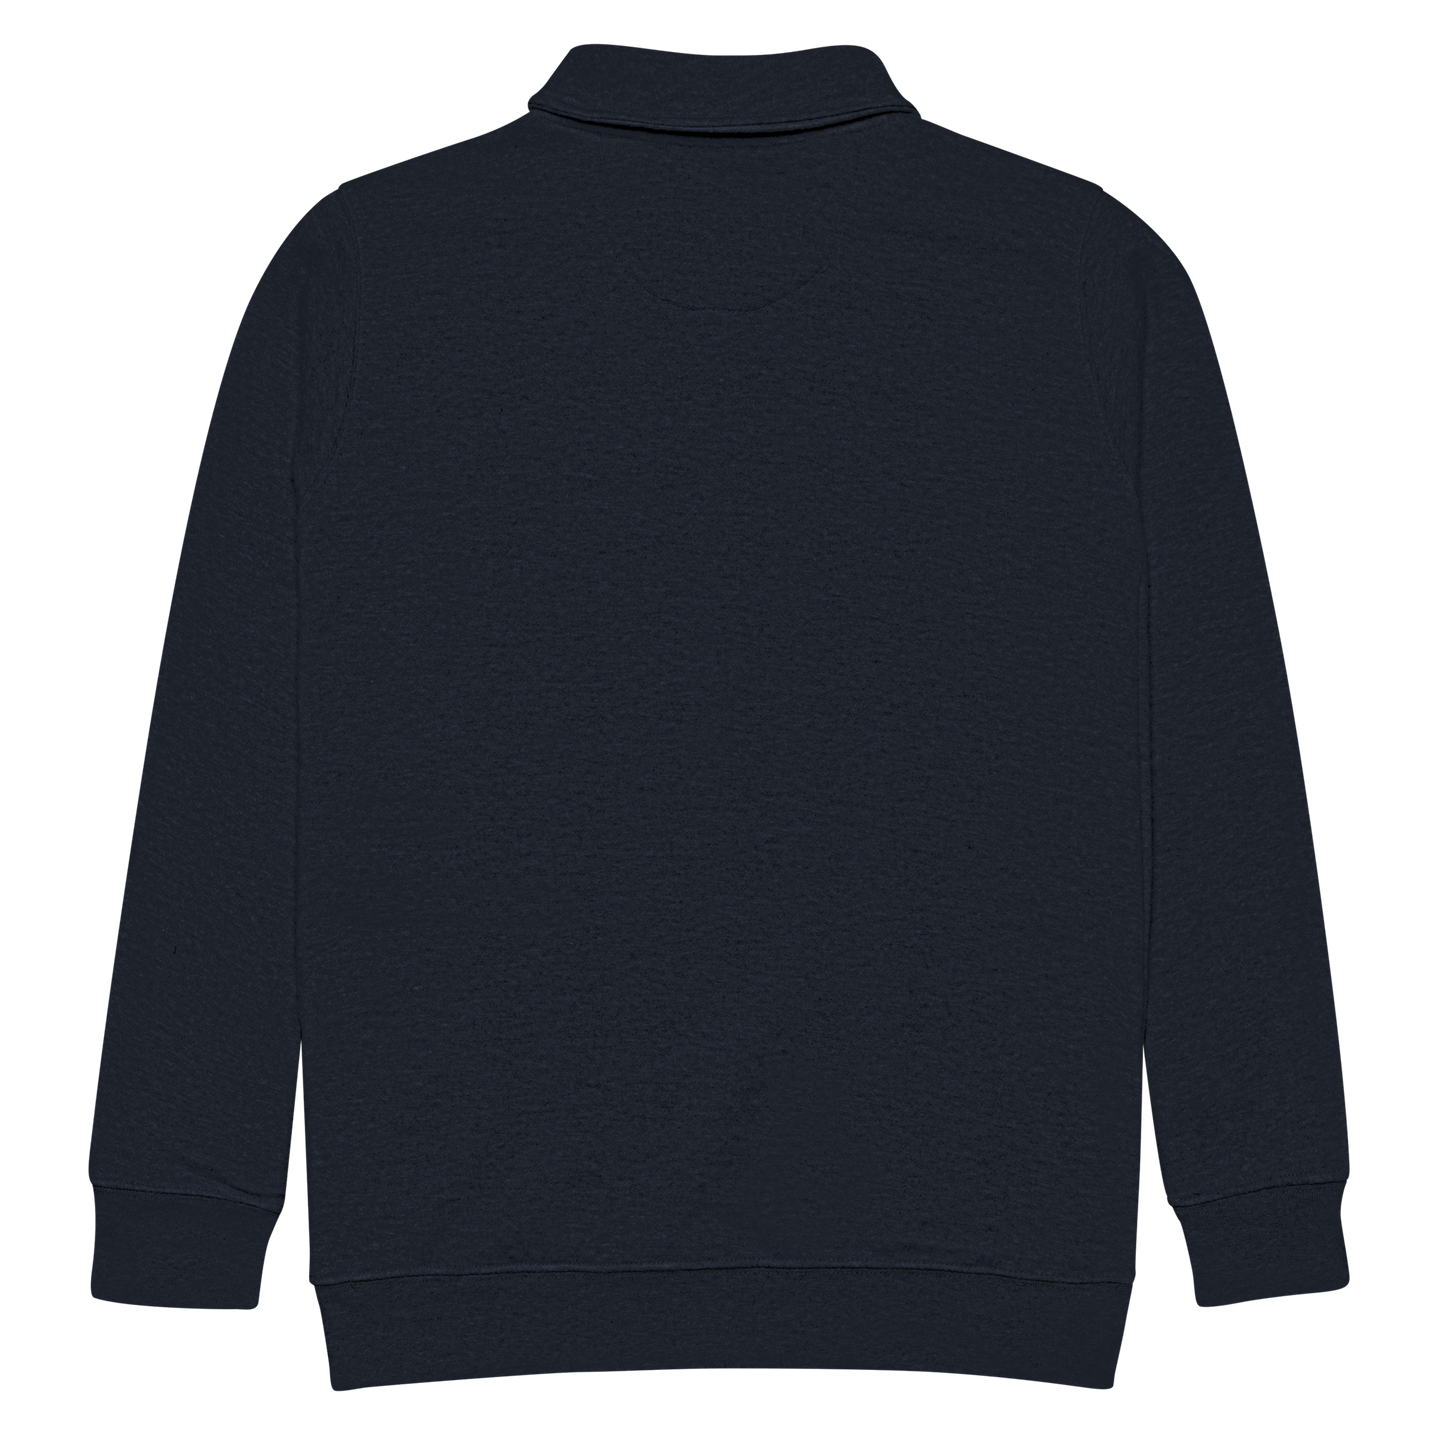 Embroidered Brink Quarter-zip Sweatshirt